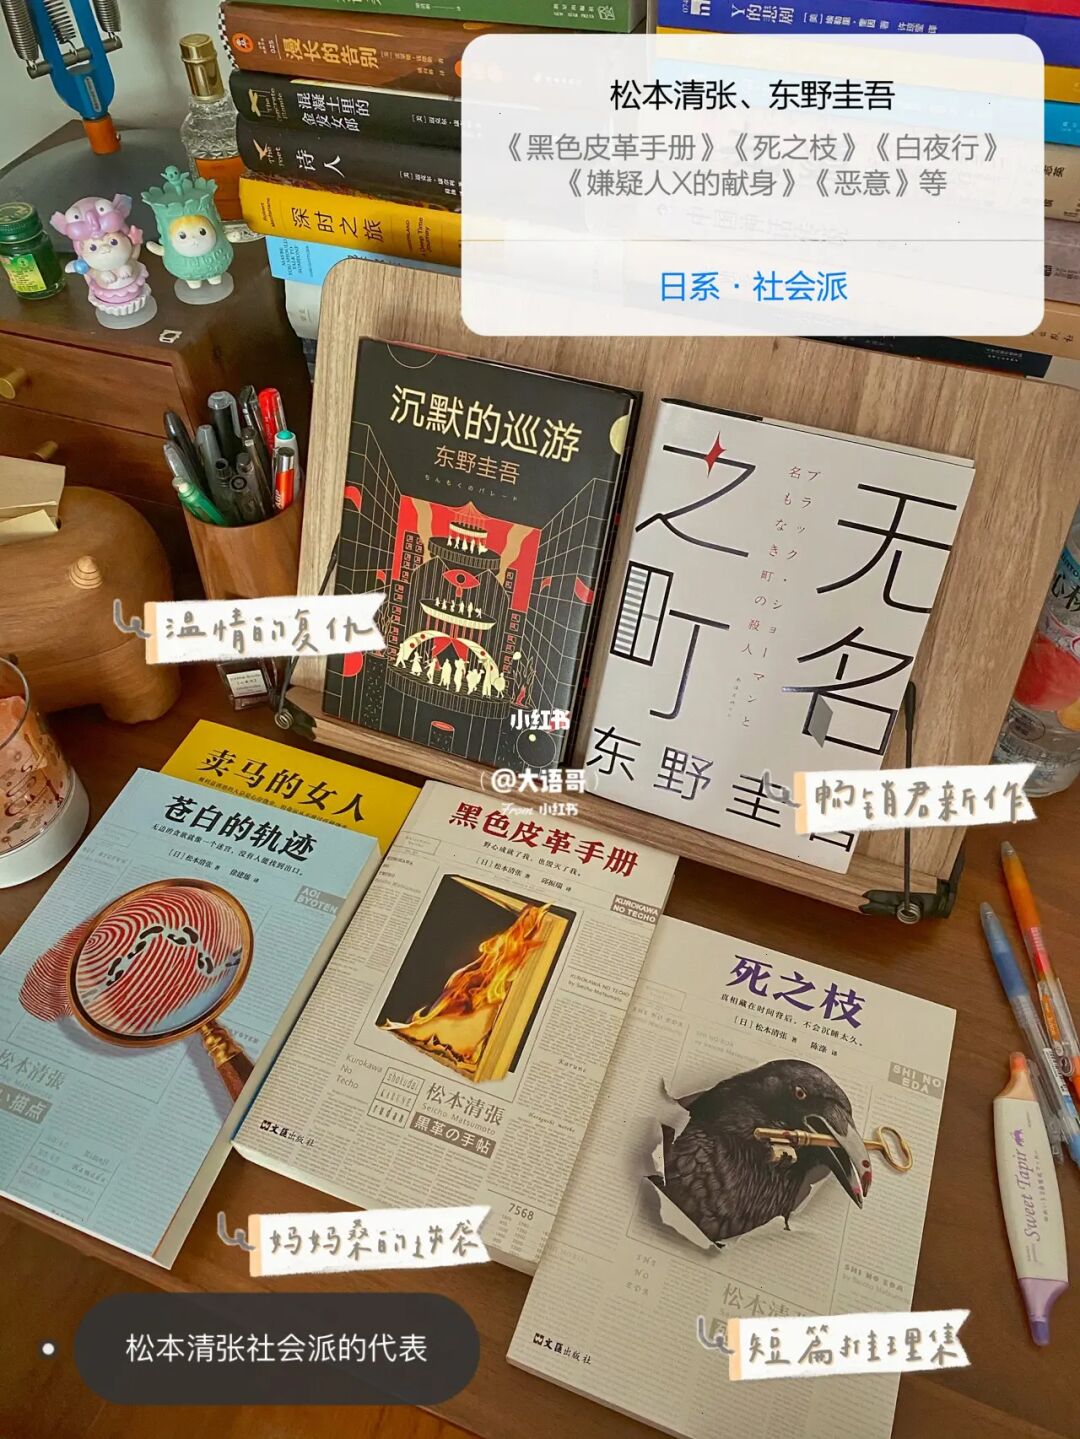 上海侦探@侦探粉丝们，孤岛书店老板来静安了！